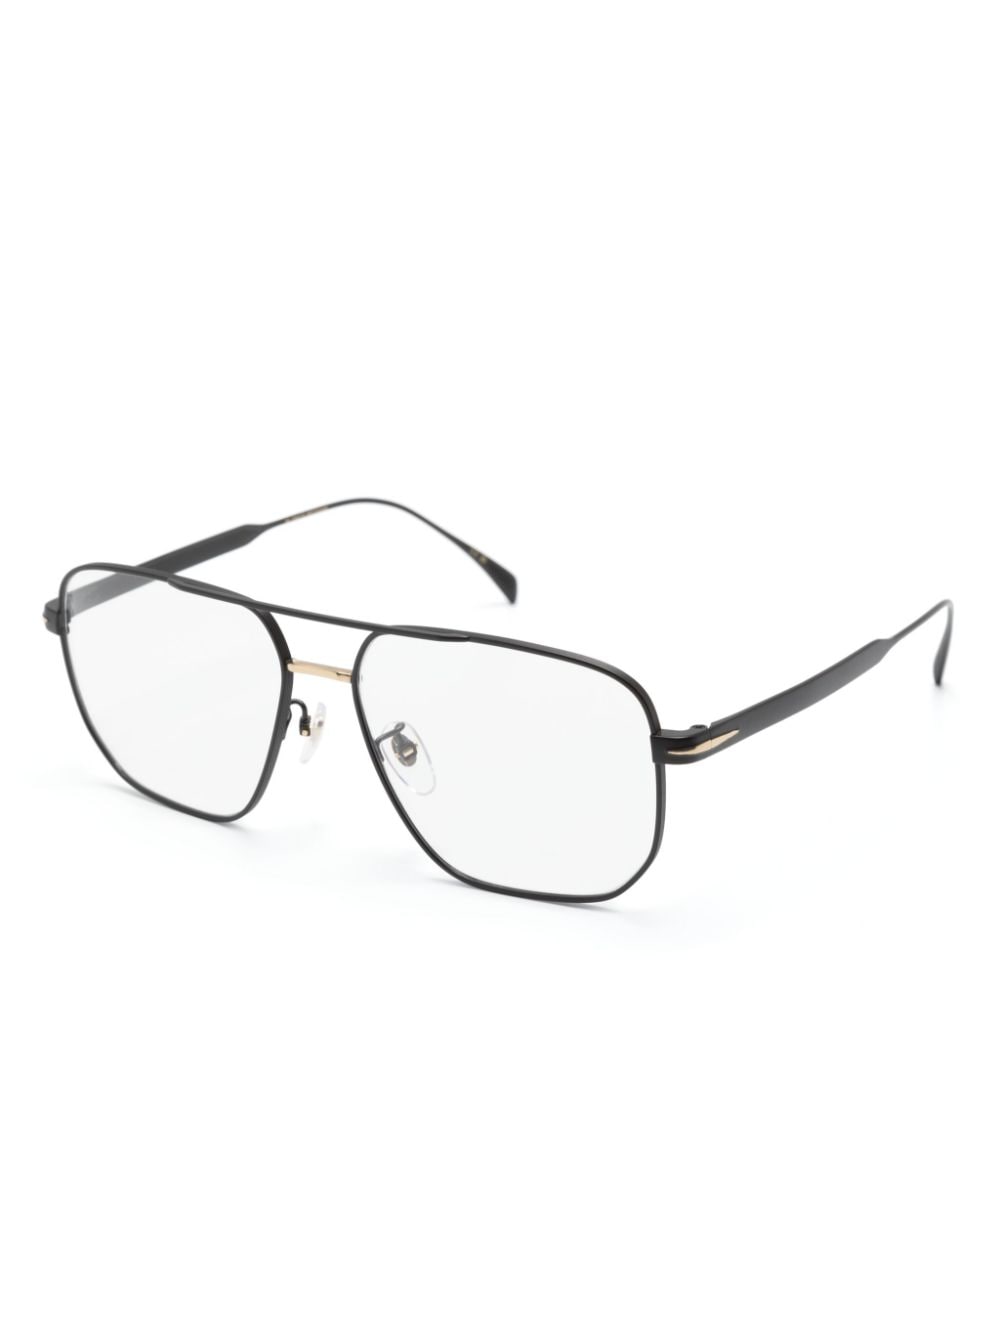 Eyewear by David Beckham pilot-frame glasses - Zwart